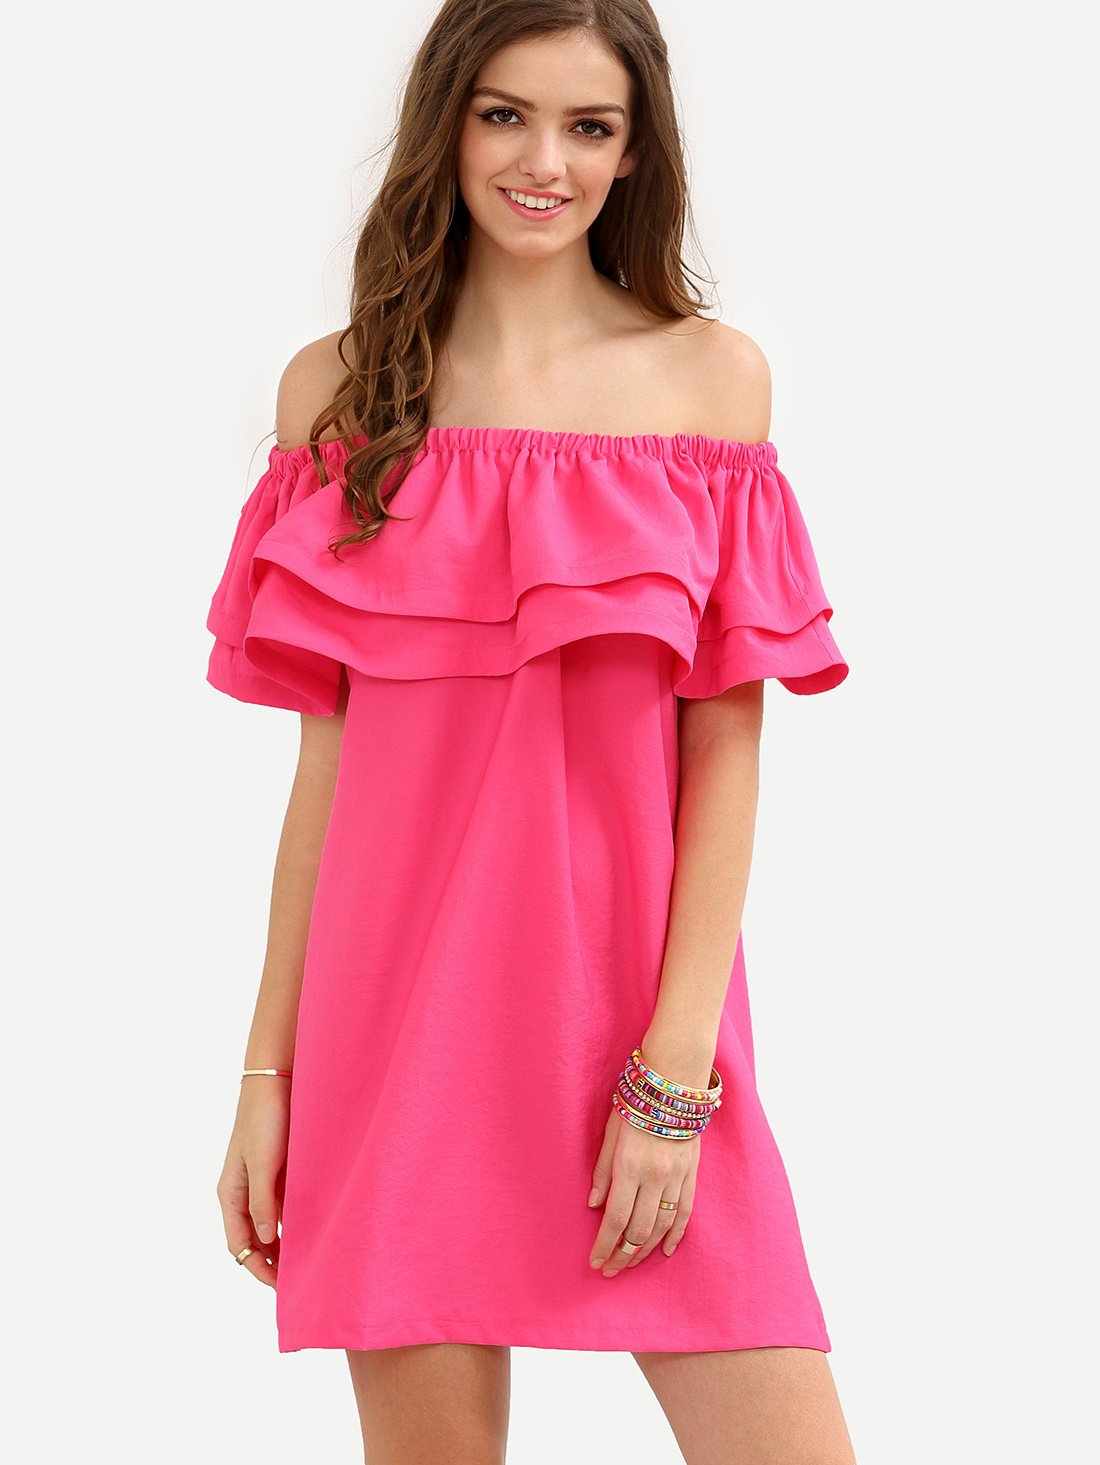 Рюша на плечо. Платье розовое. Платье с воланами. Летнее платье с воланами. Розовое летнее платье.